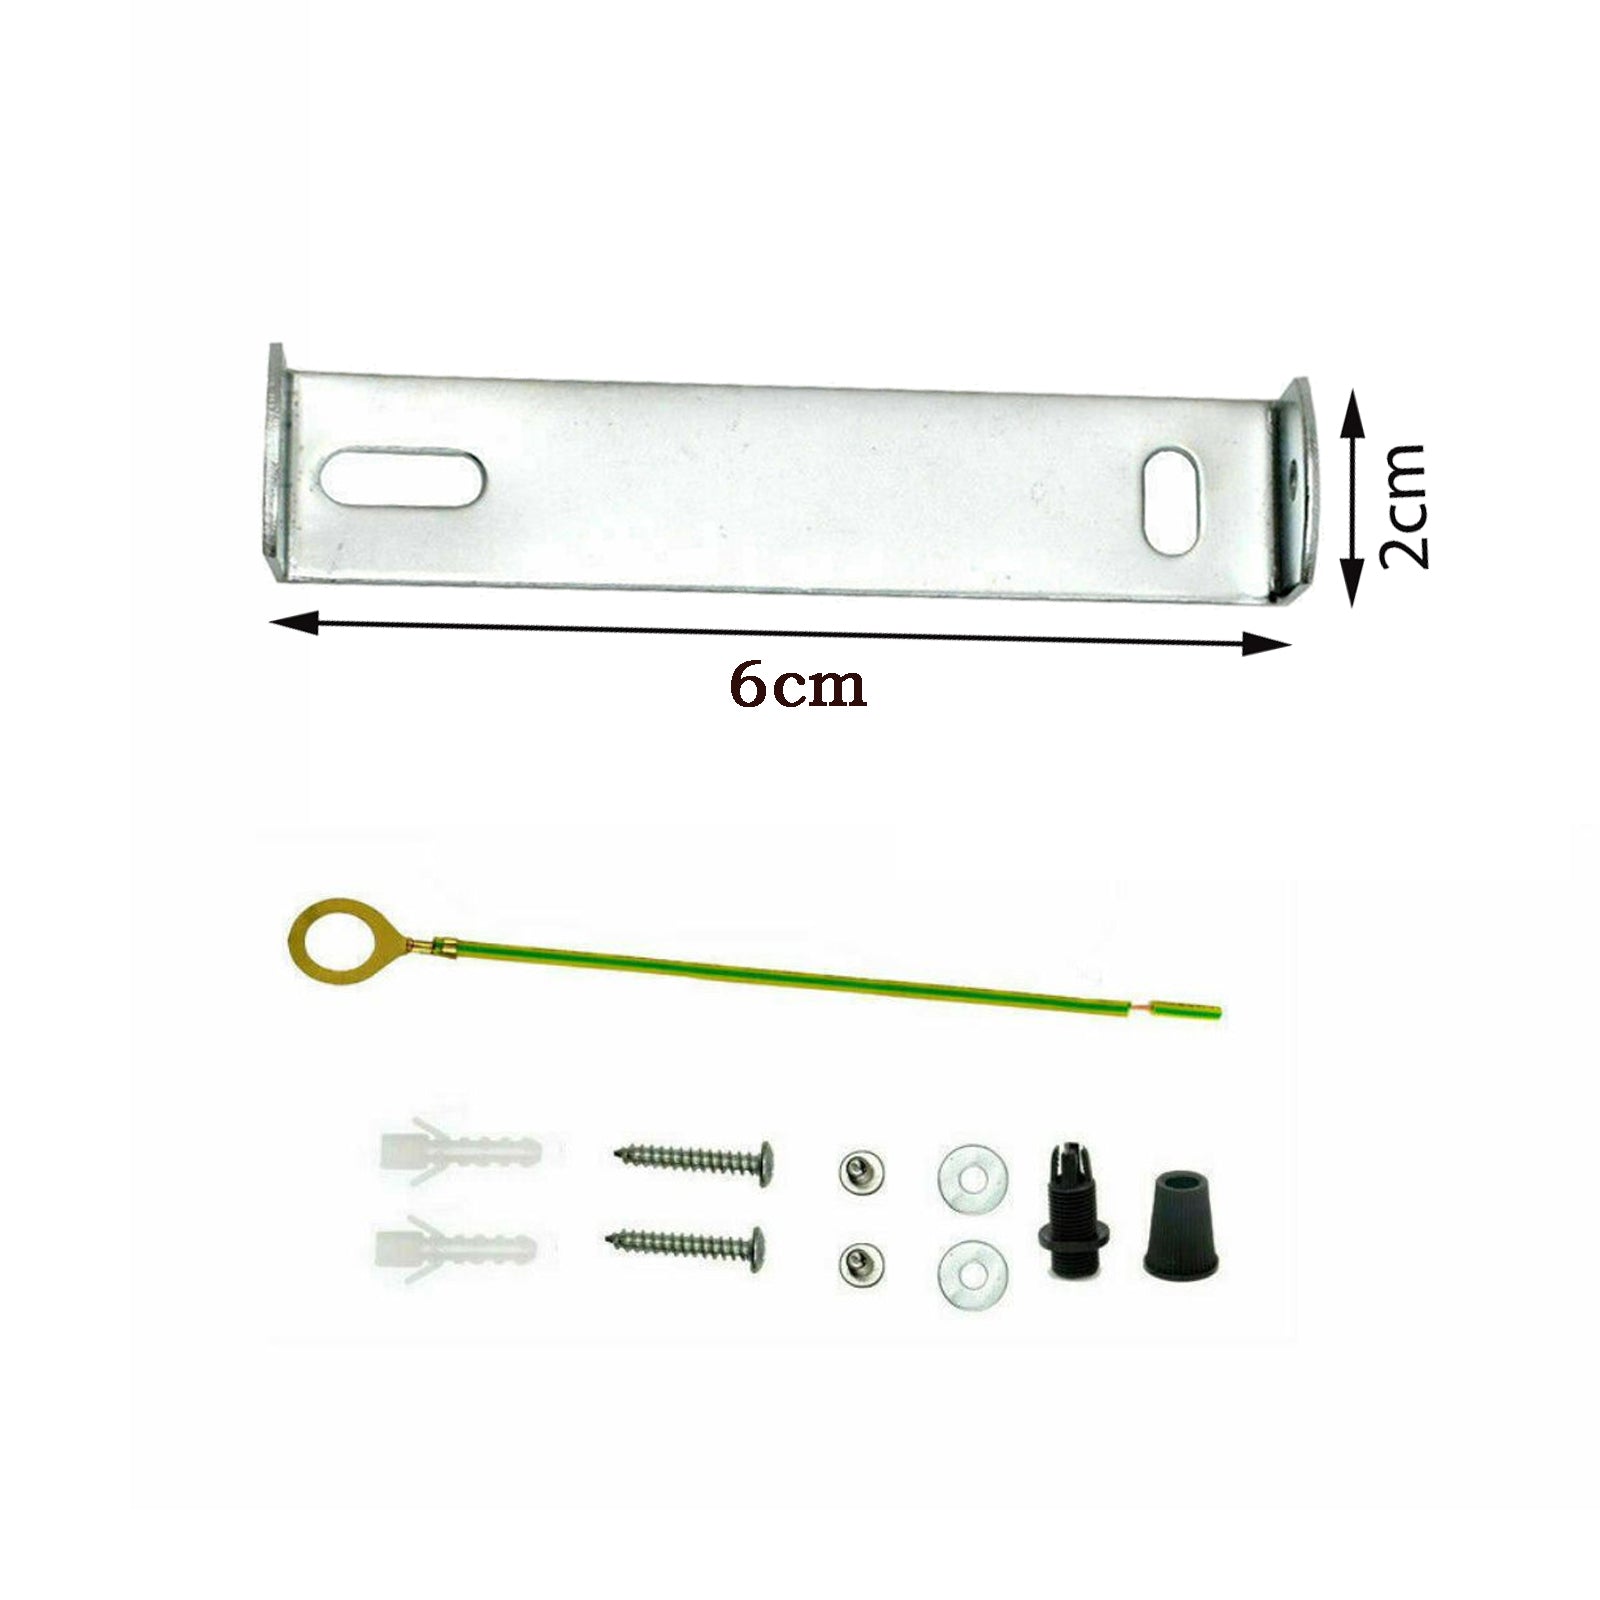 Deckenrosette Strap Halterung Strap Brace Plate mit Zubehör Beleuchtung 60mm